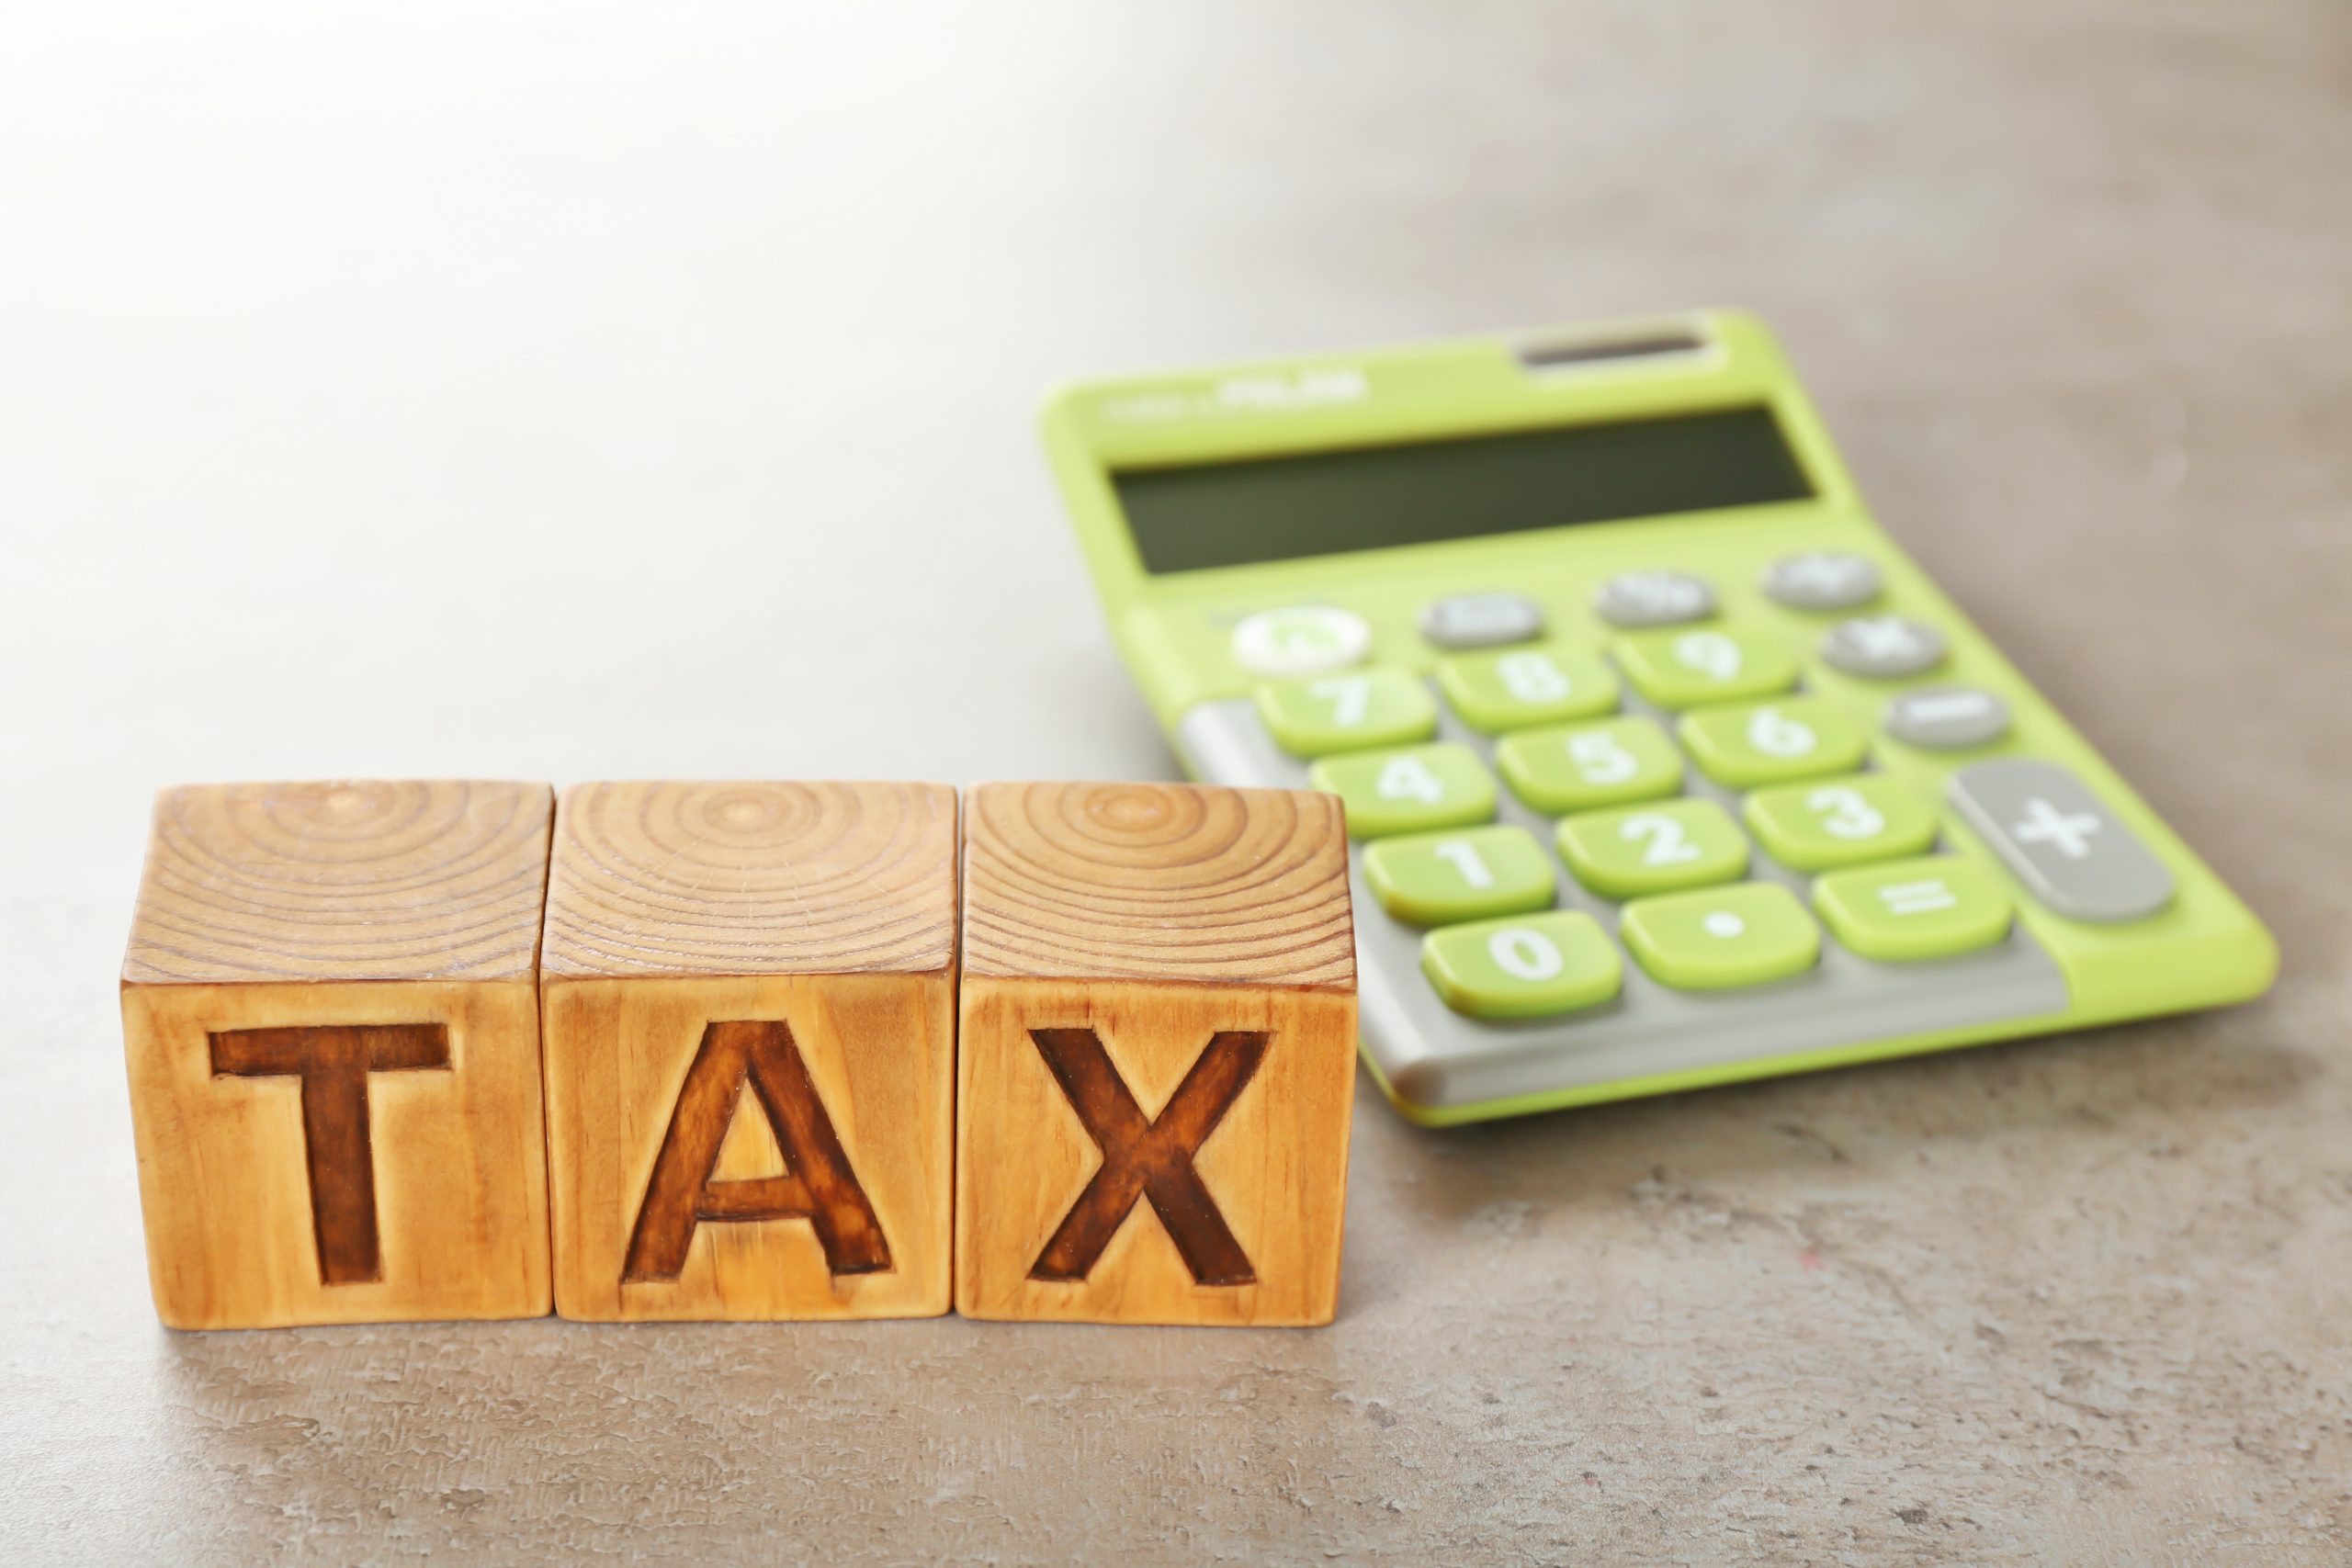 Scopri di più sull'articolo Dl Fisco, Forum “Slittamento norma IVA non basta, serve incontro con Governo per definire materia fiscale Terzo settore”